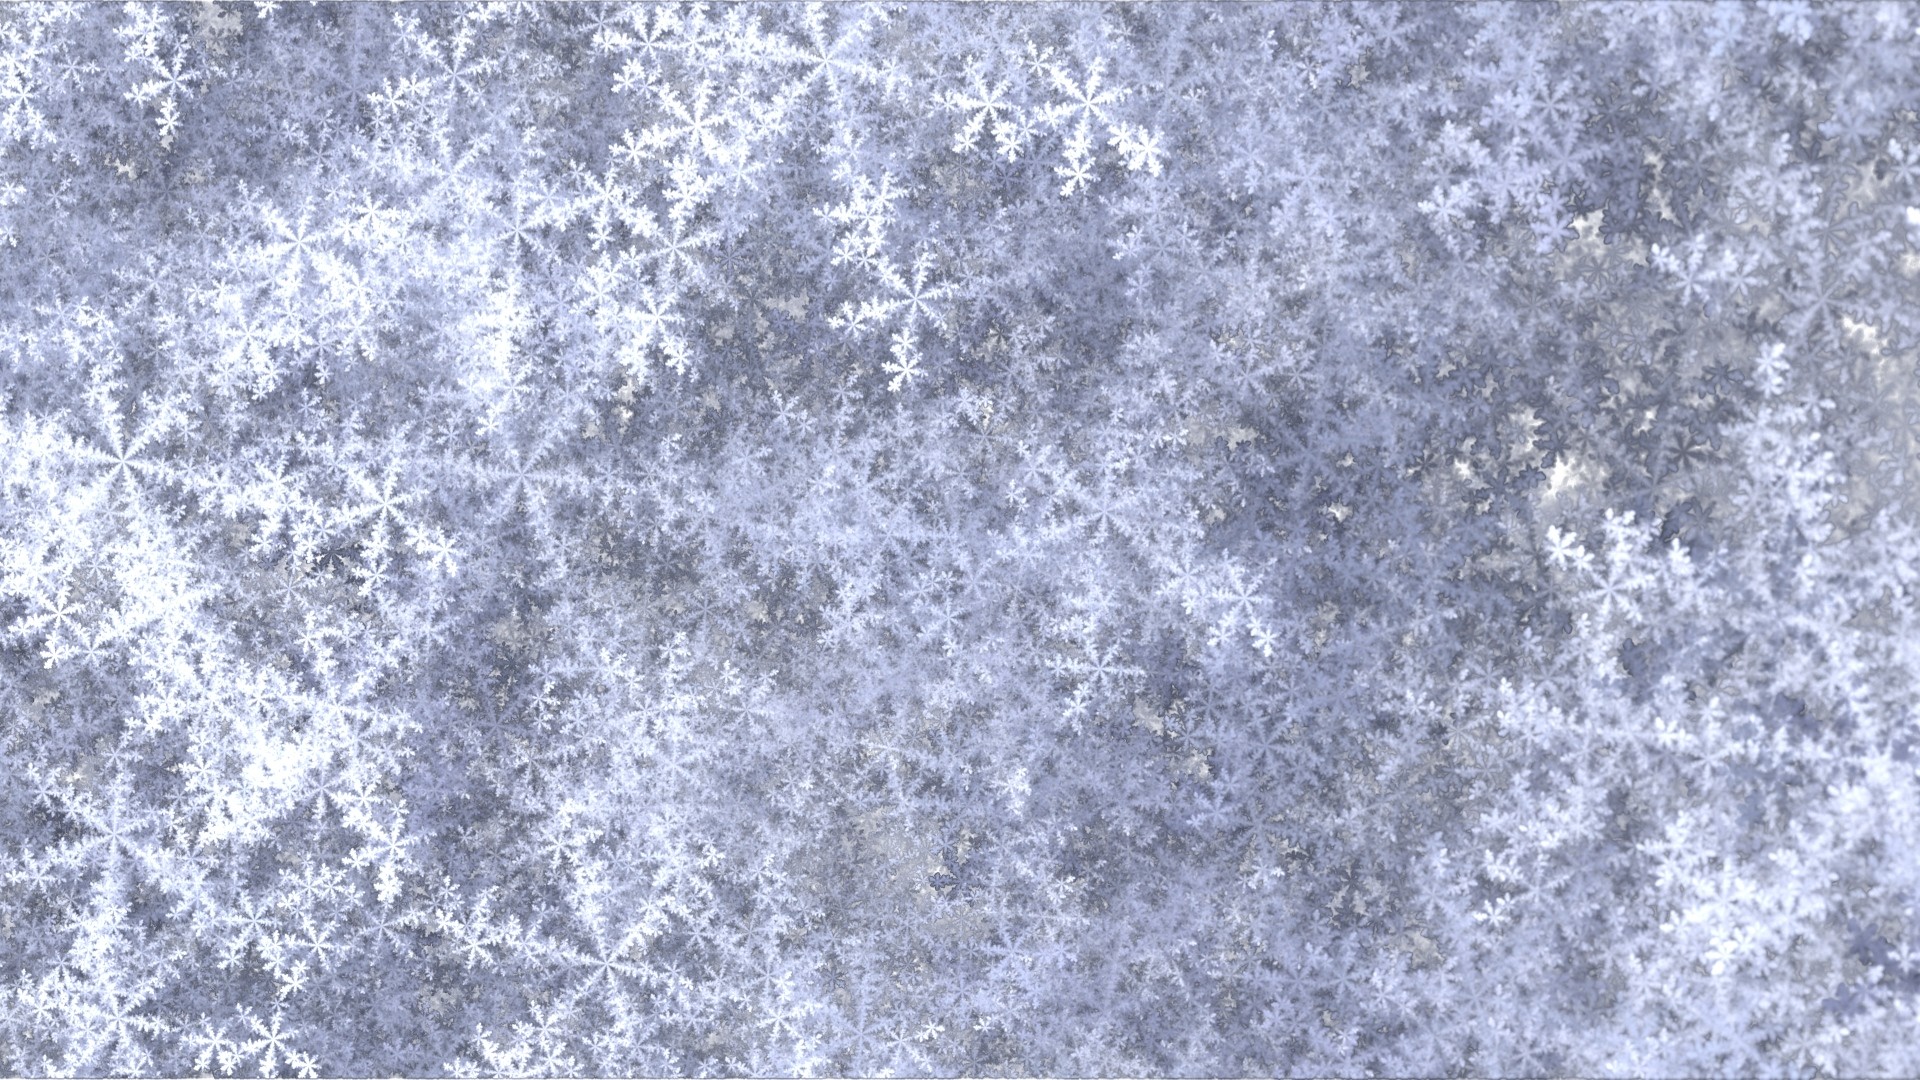 1920x1080 snow falls wallpaper 2015 - Grasscloth Wallpaper